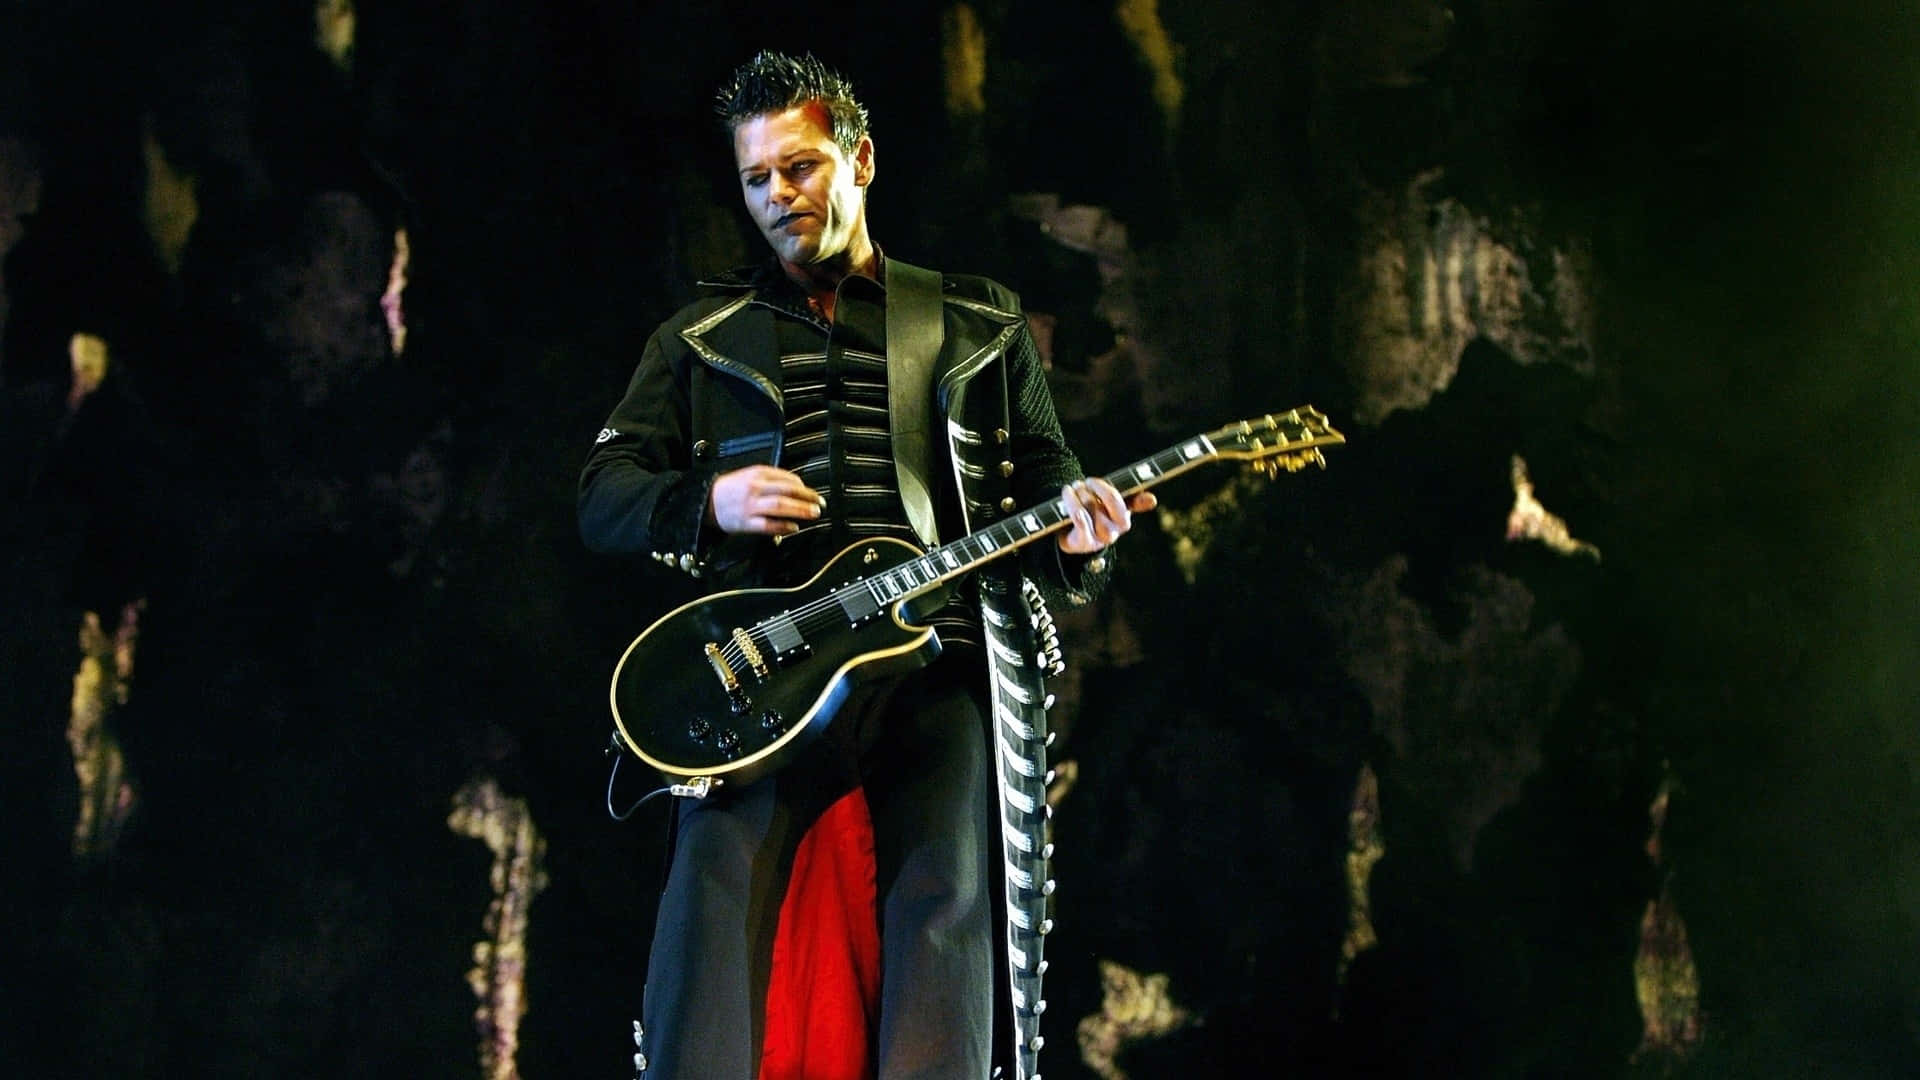 Rammstein Guitarist On Stage Background